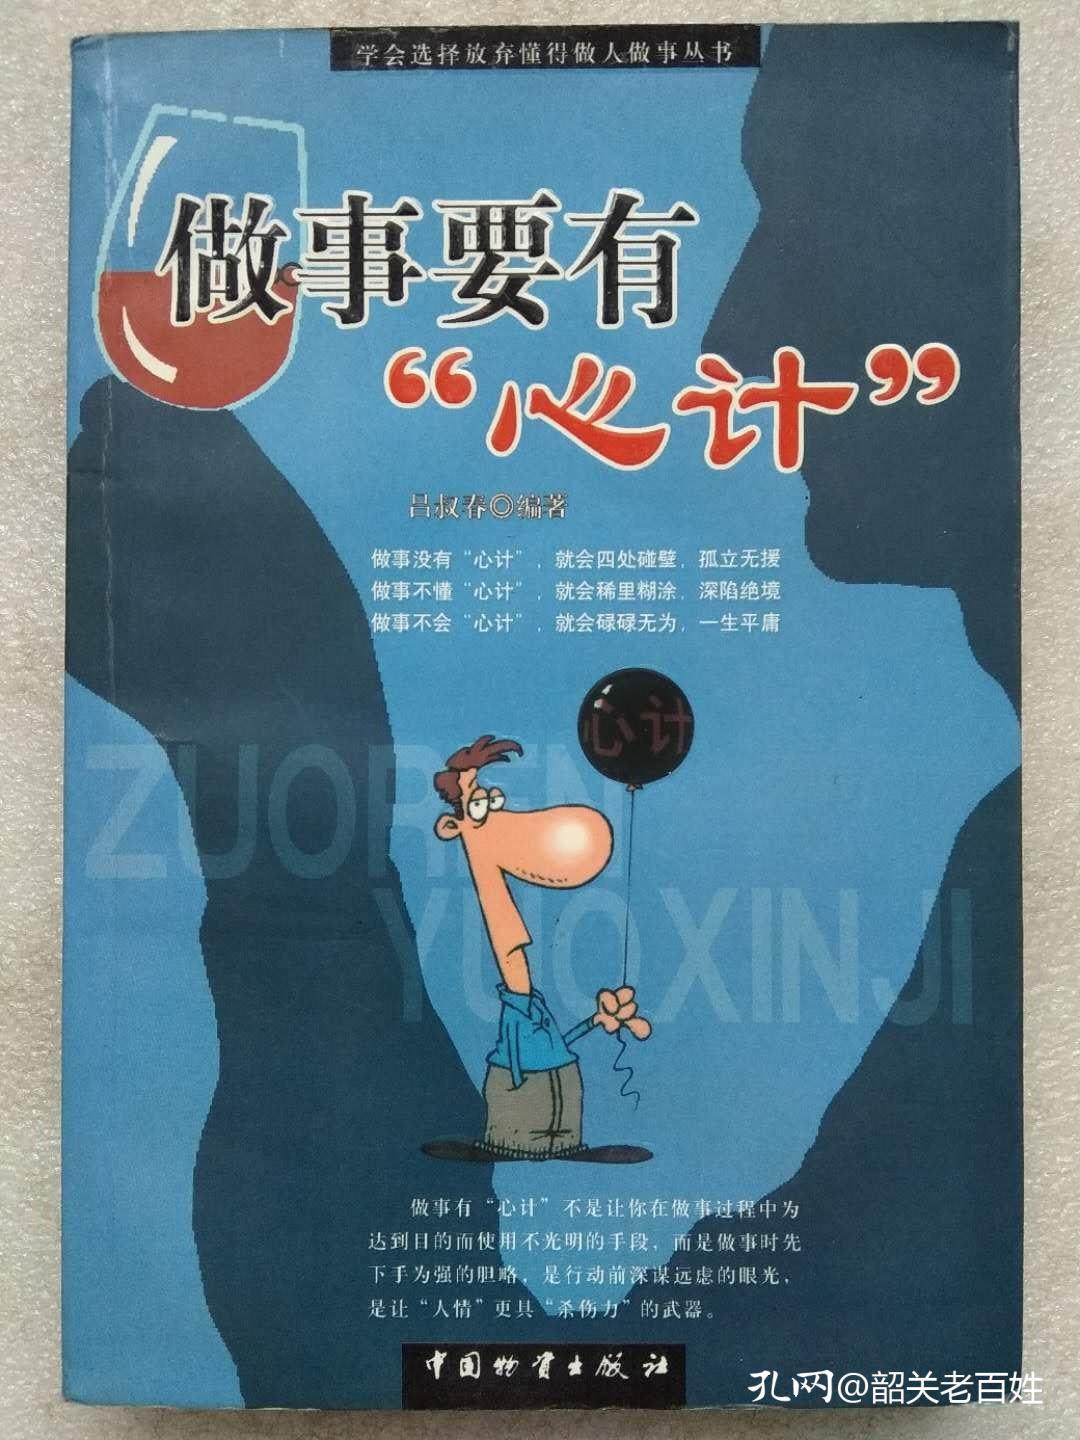 做事要有“心计”--吕叔春编著。中国物资出版社。2004年。1版1印